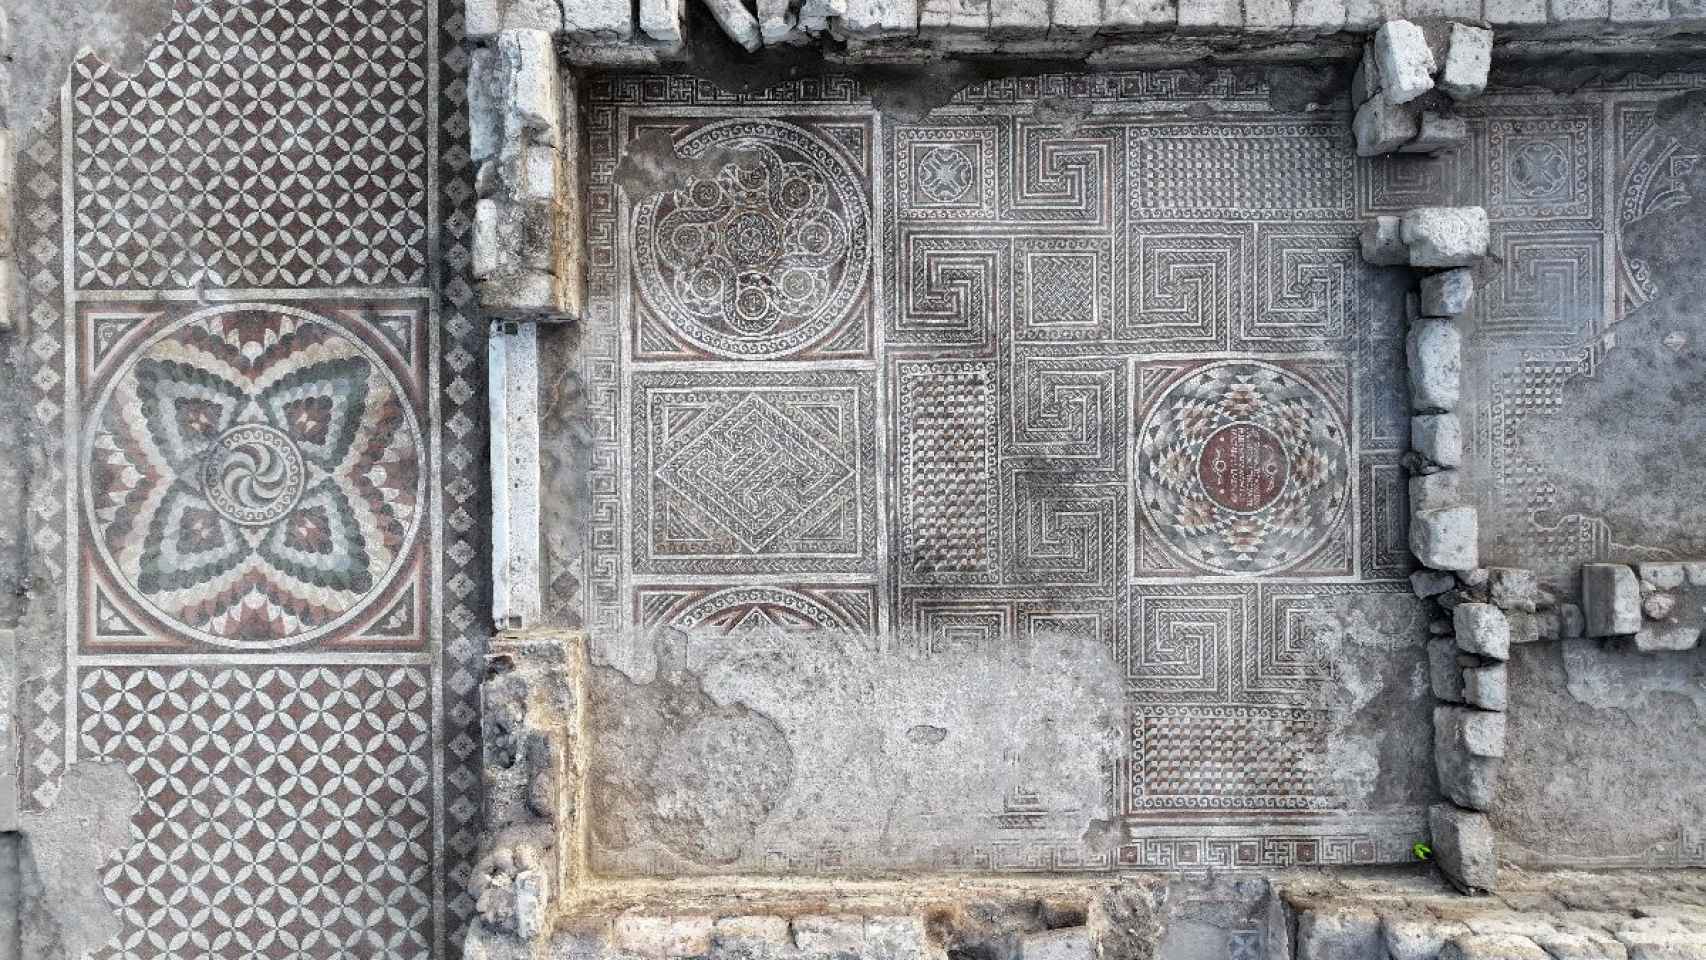 descubren unos mosaicos enormes y excepcionales en una lujosa villa romana de turquía